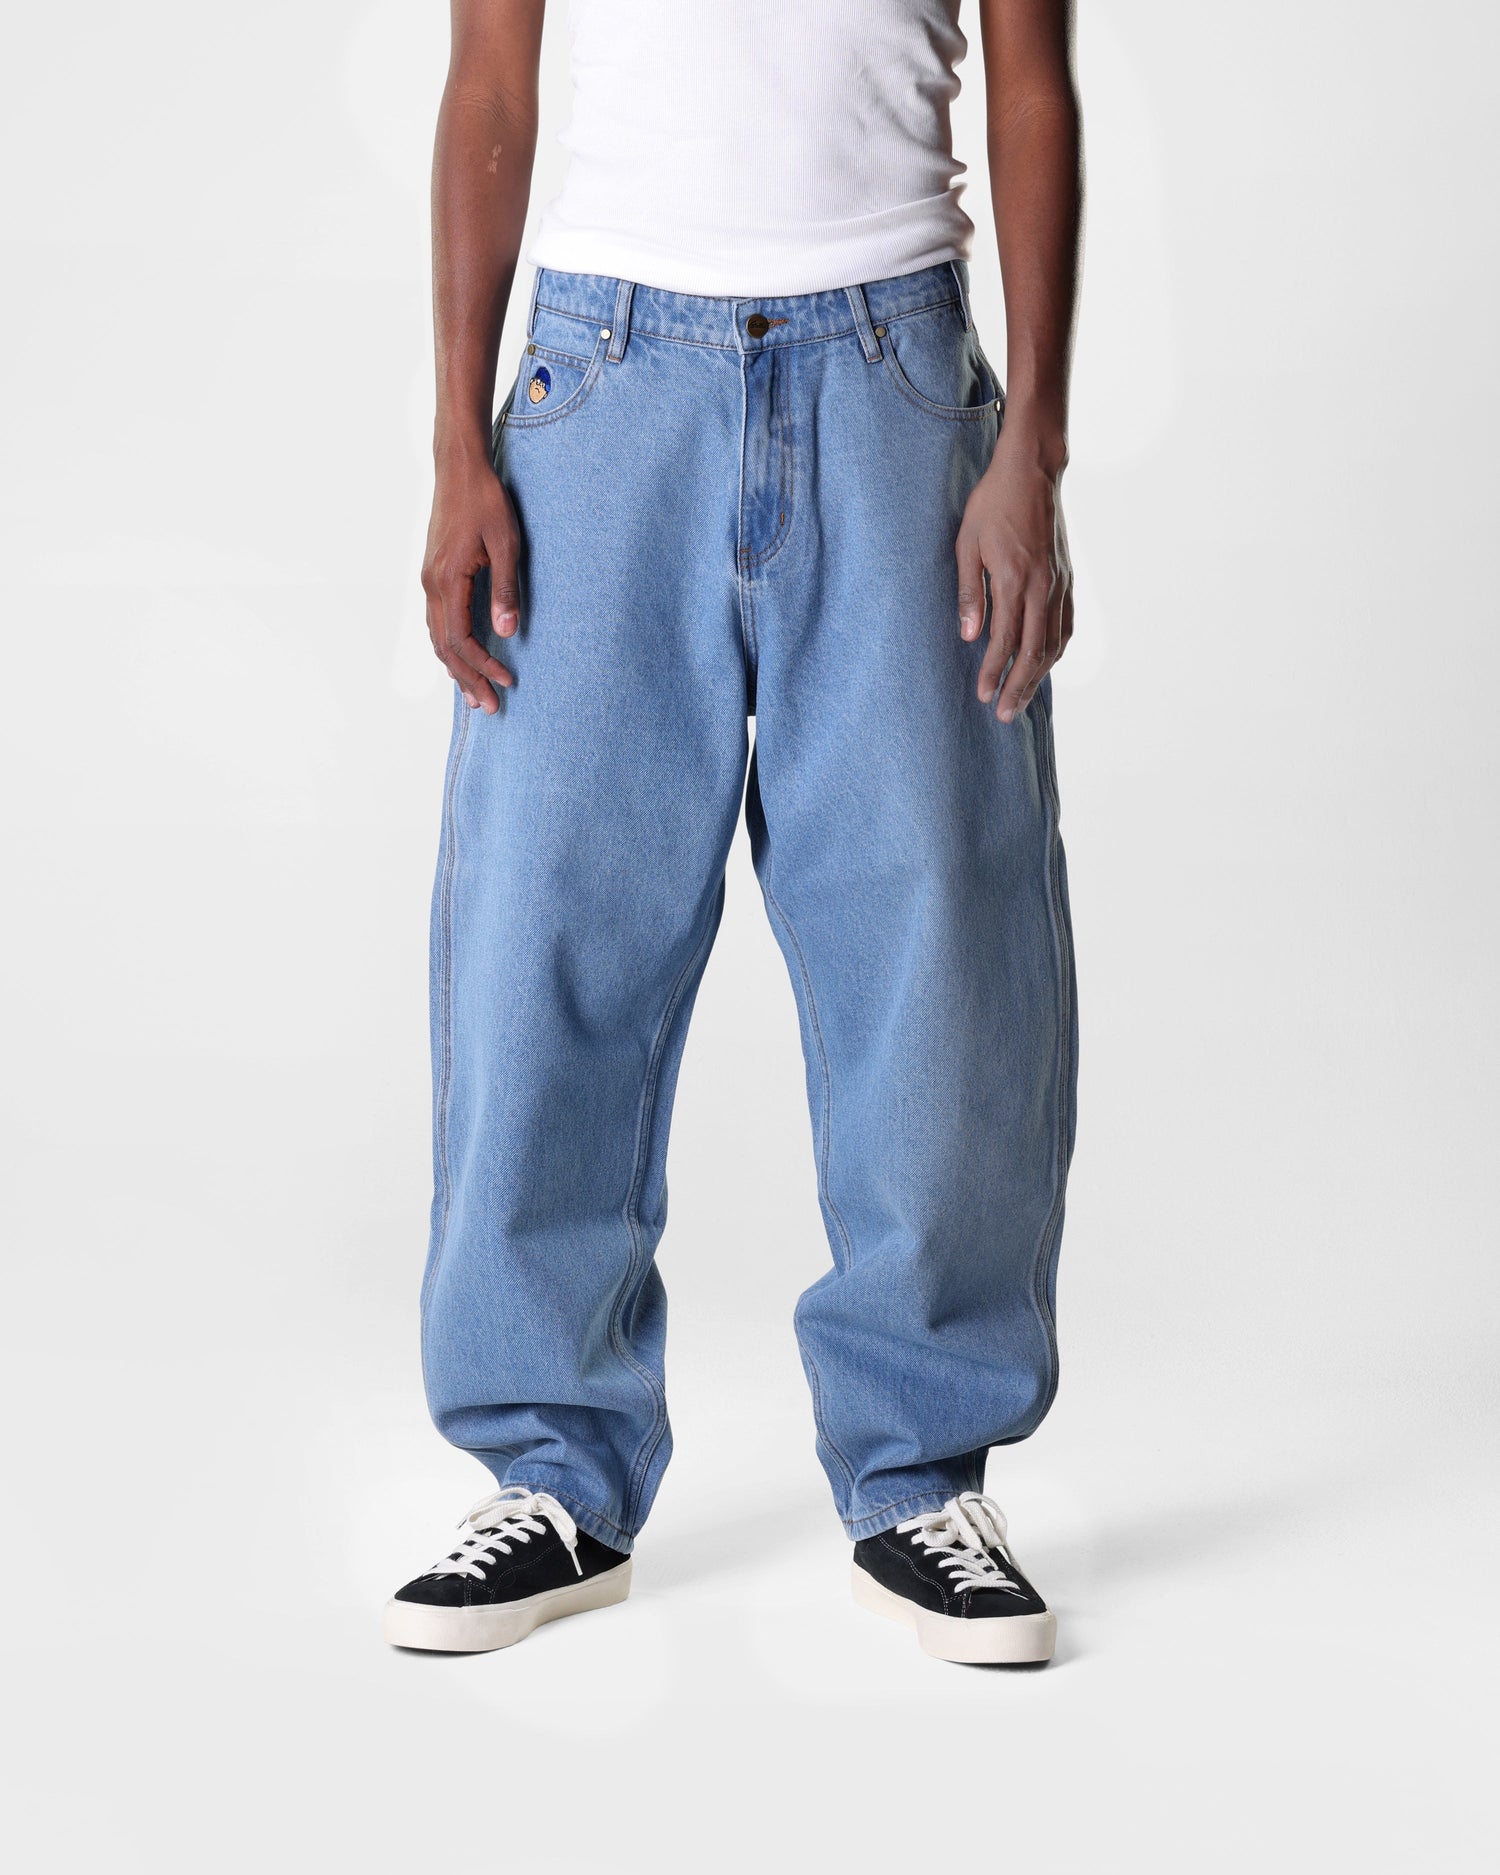 Santosuosso Denim Jeans, Washed Indigo